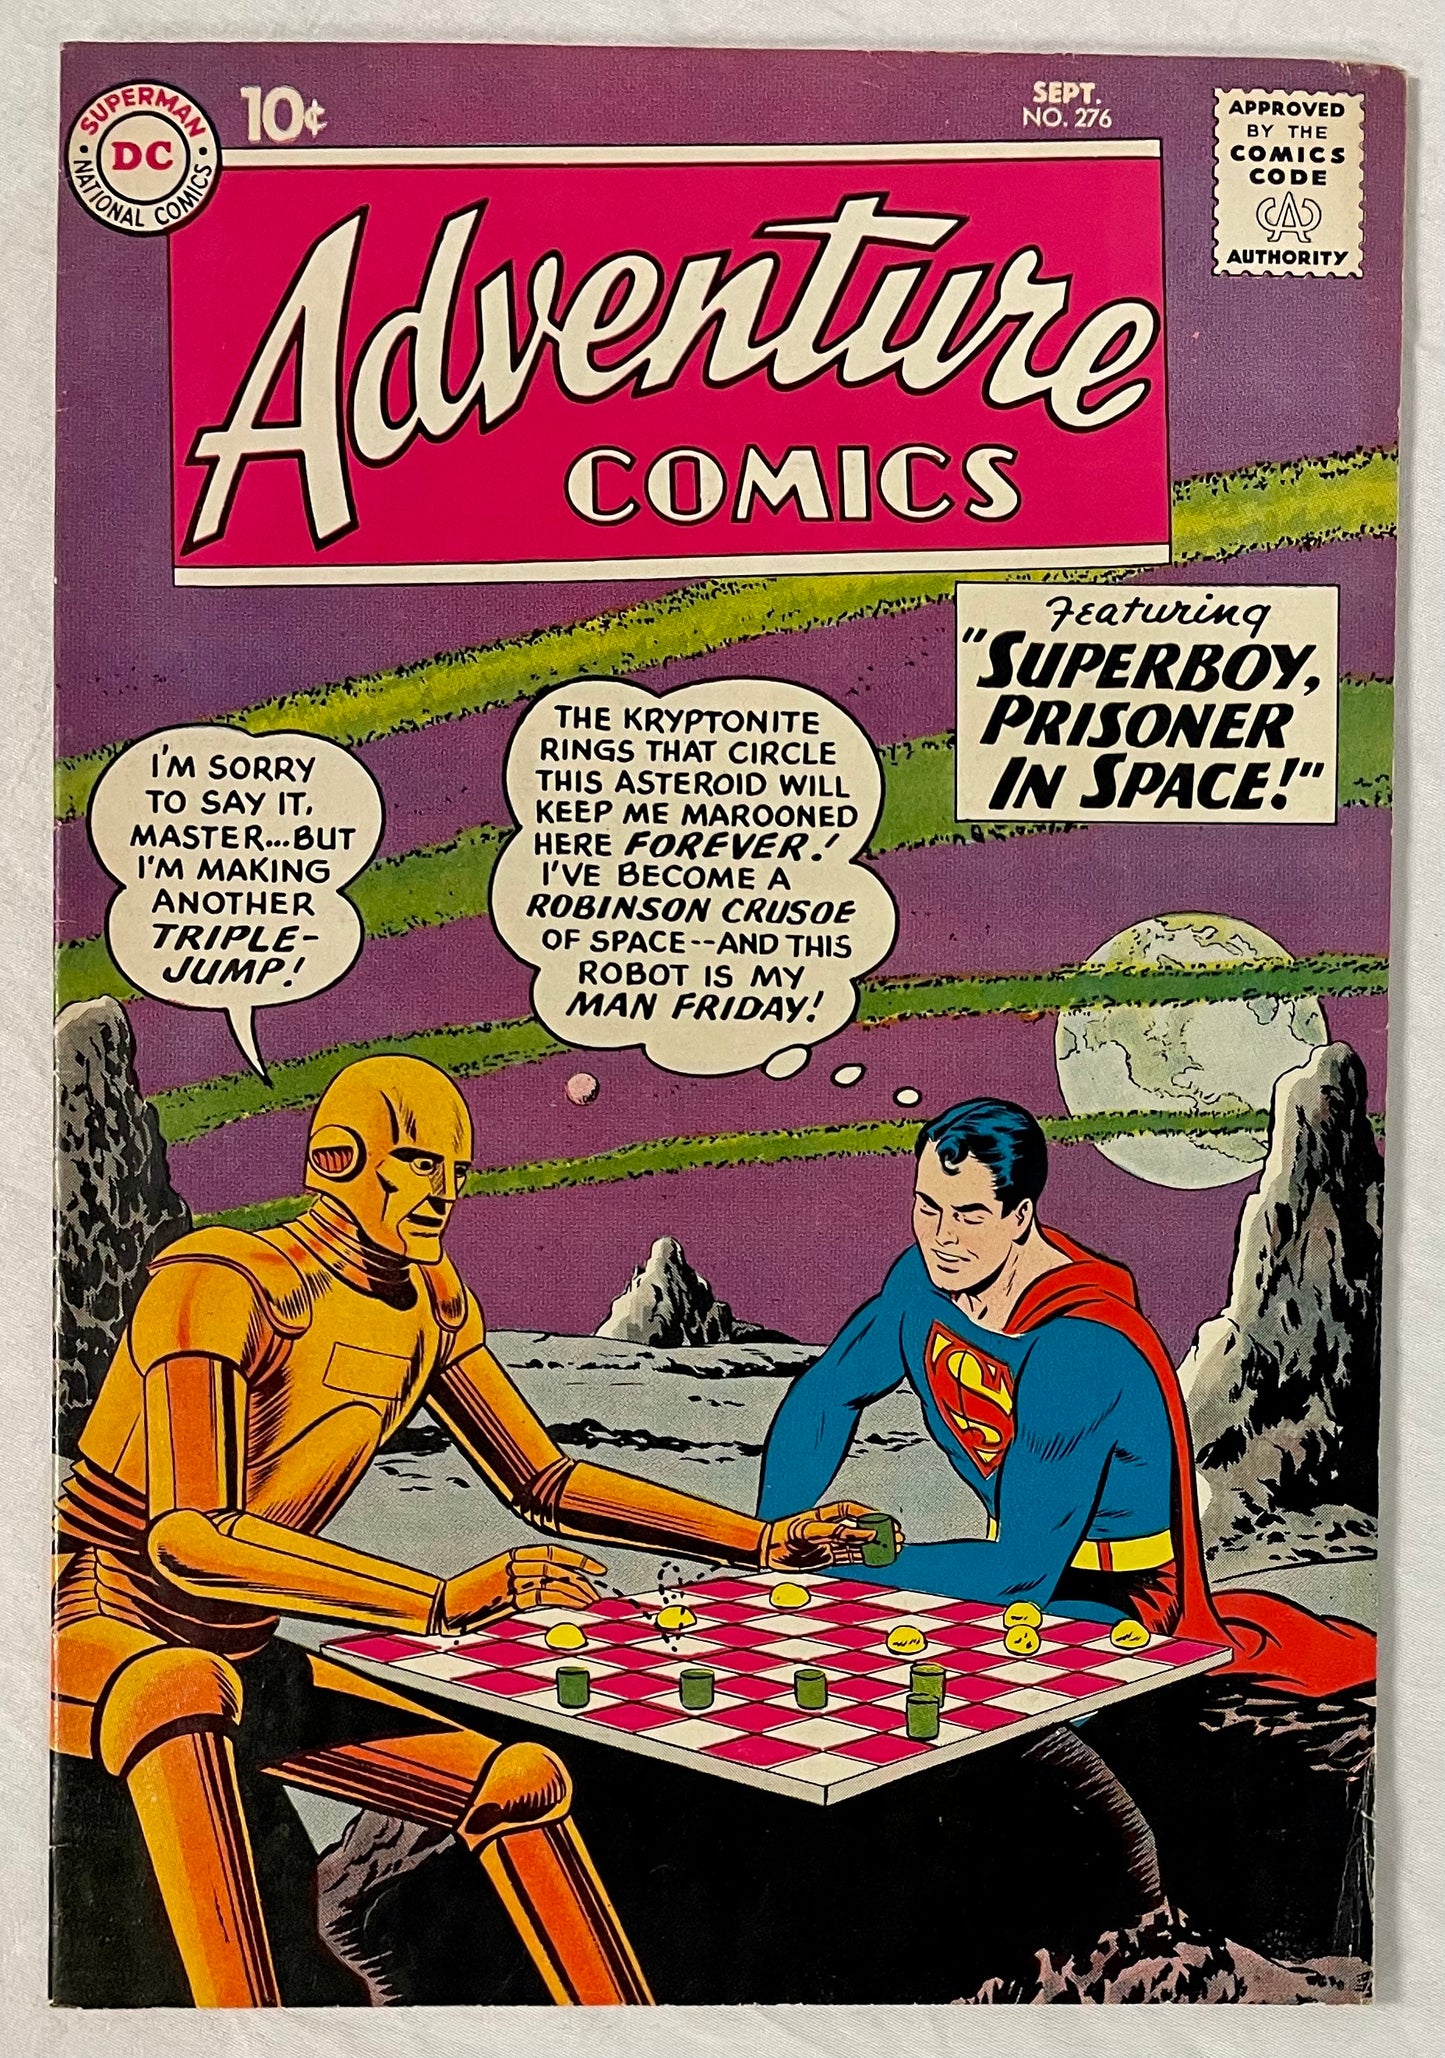 DC Comics Adventure Comics No. 276